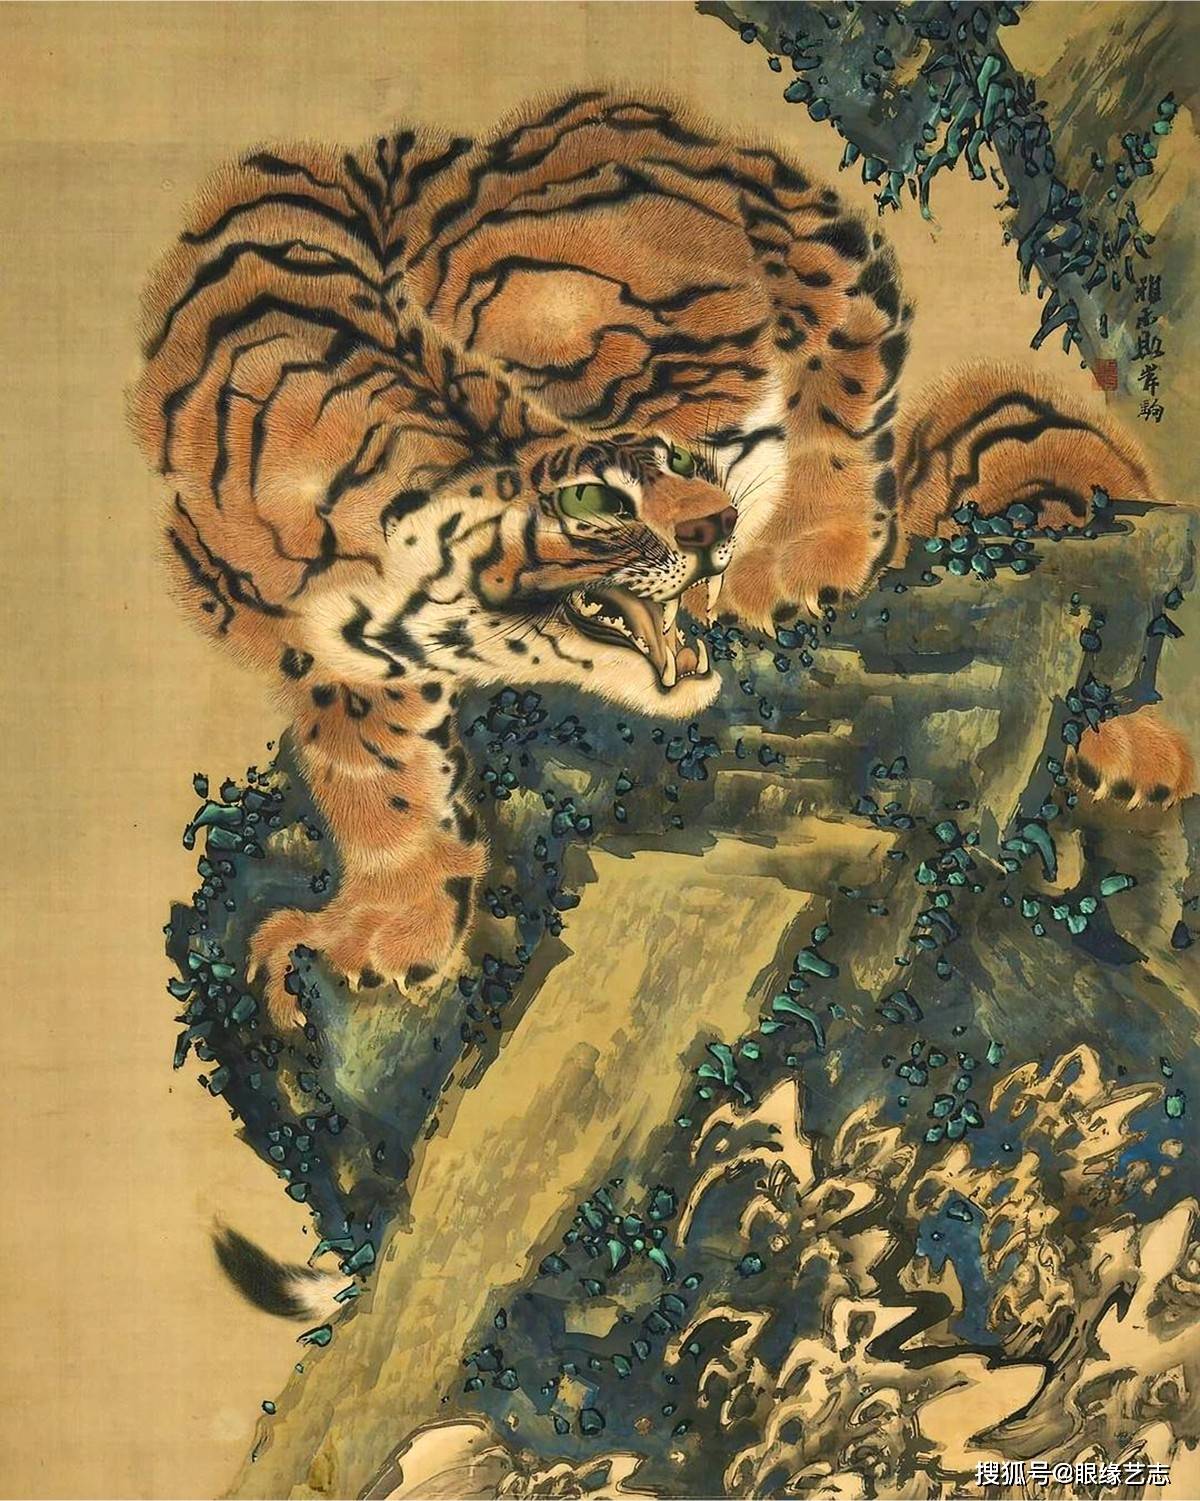 岸驹(1749-1838),是日本宫廷画家,同时也是江户时期的画虎名家.